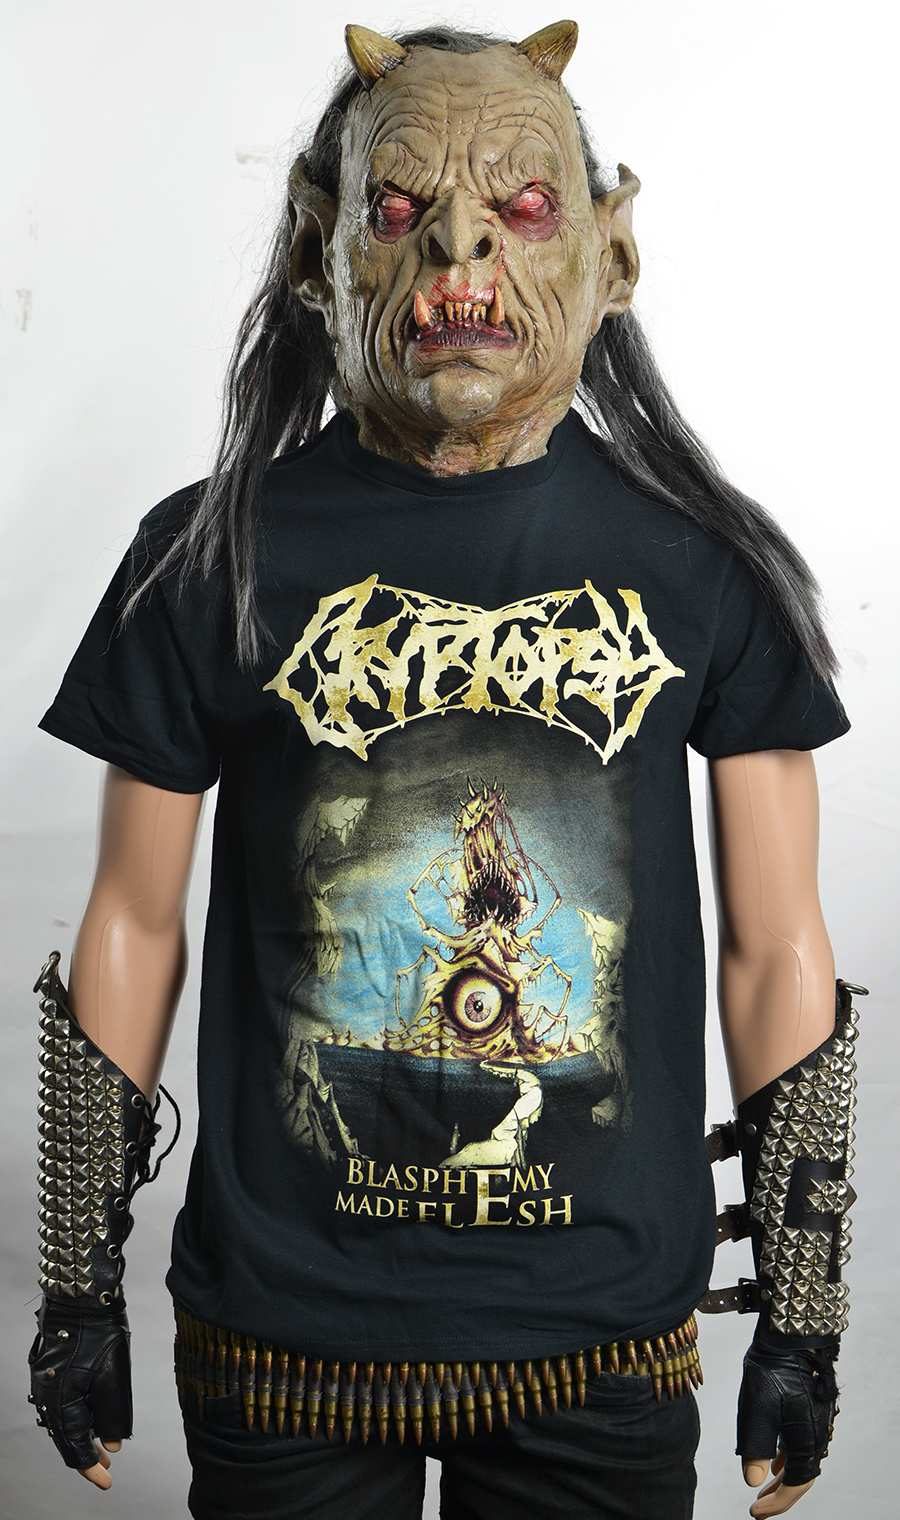 CRYPTOPSY - Blasphemy Made Flesh (T-Shirt)